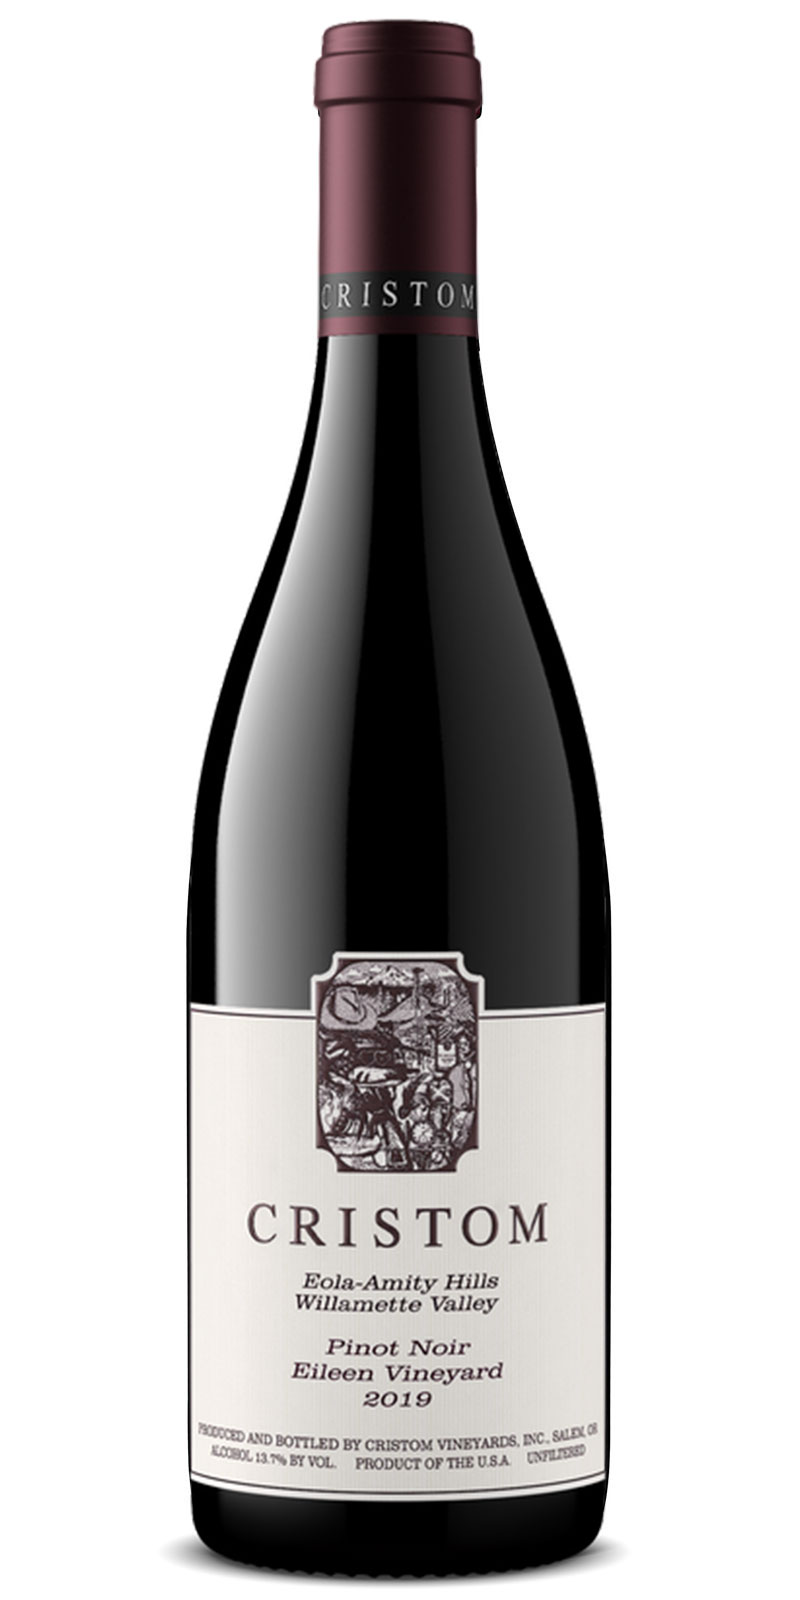 Bottle of Cristom Vineyards 2019 Pinot Noir from Eileen Vineyard